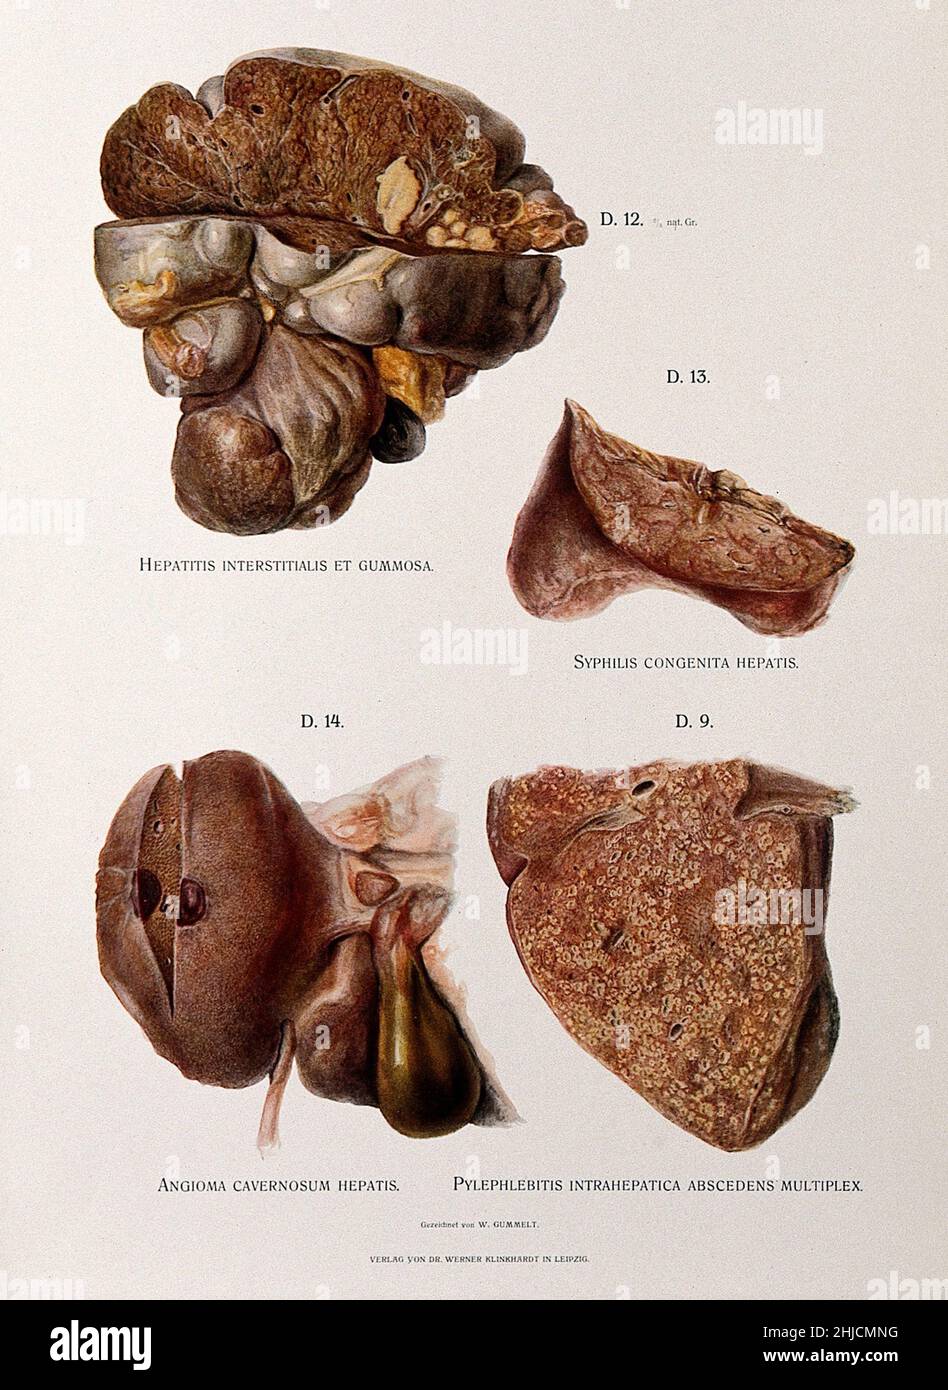 Chromolithograph che illustra la malattia epatica in campioni dissedati causati da epatite (in alto a sinistra), sifilide congenita (in alto a destra), epatite da angioma cavernoso (in basso a sinistra), e pylebitis intrahepatica ascendens multiplex (in basso a destra). Le piastre sono state verniciate da casi ospedalieri immediatamente dopo la morte. Da W. Gummelt, 1897. Foto Stock